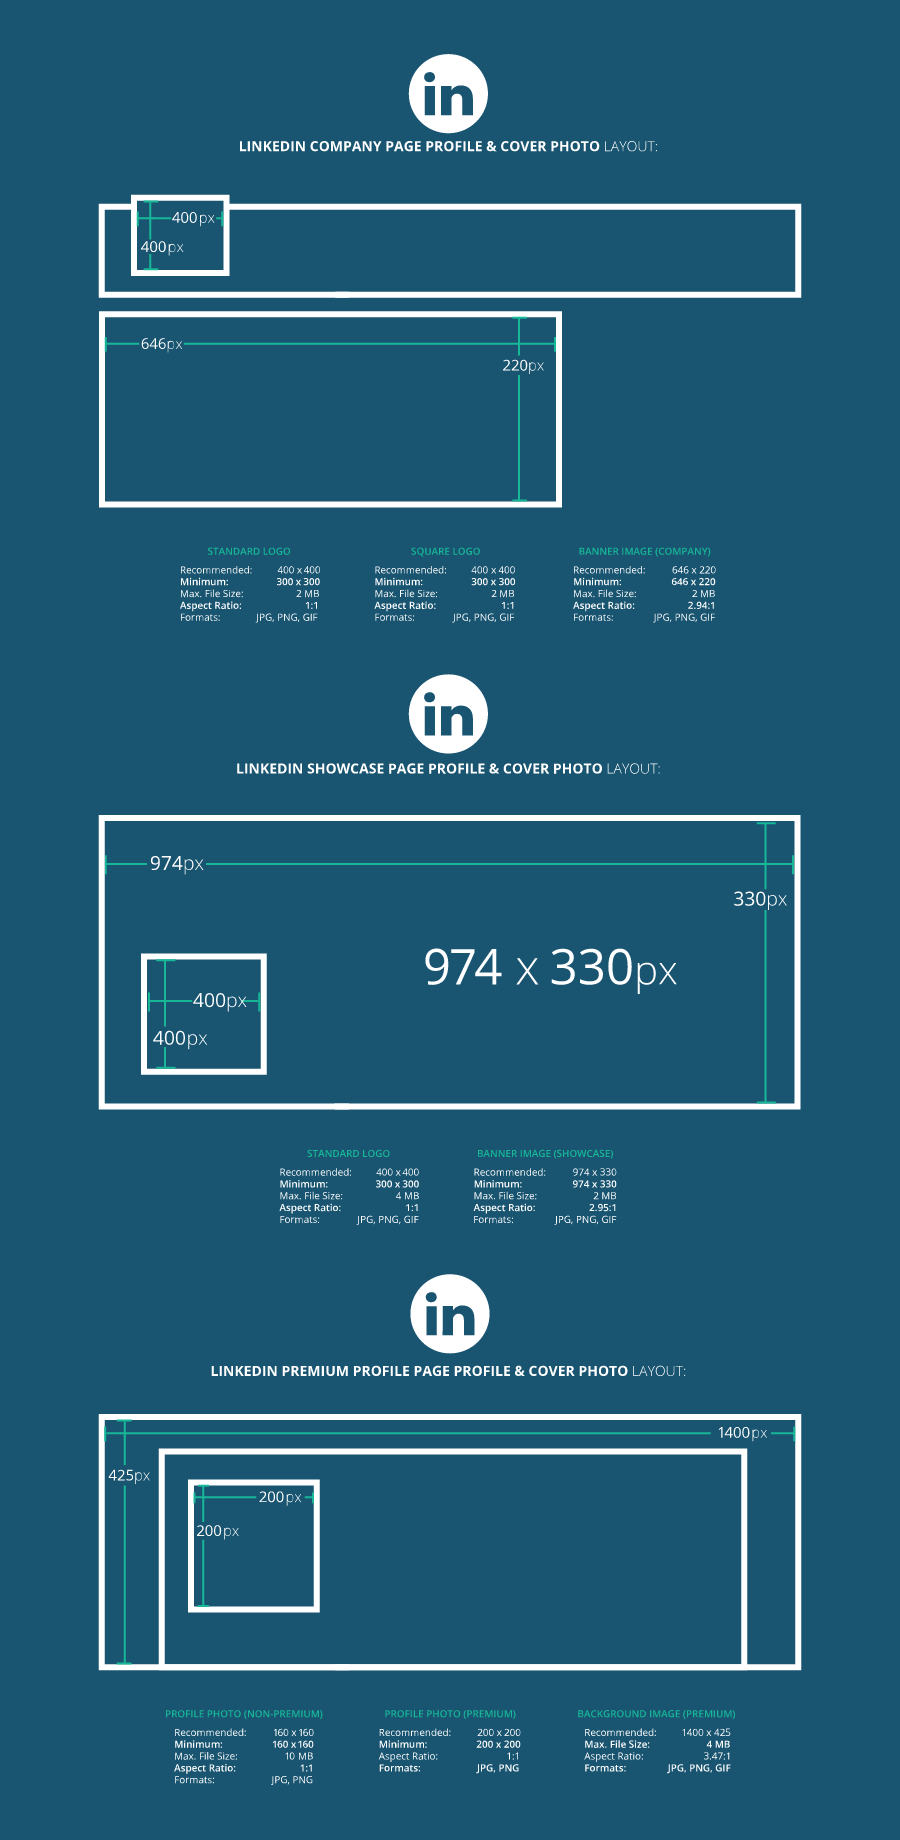 LinkedIn image sizes